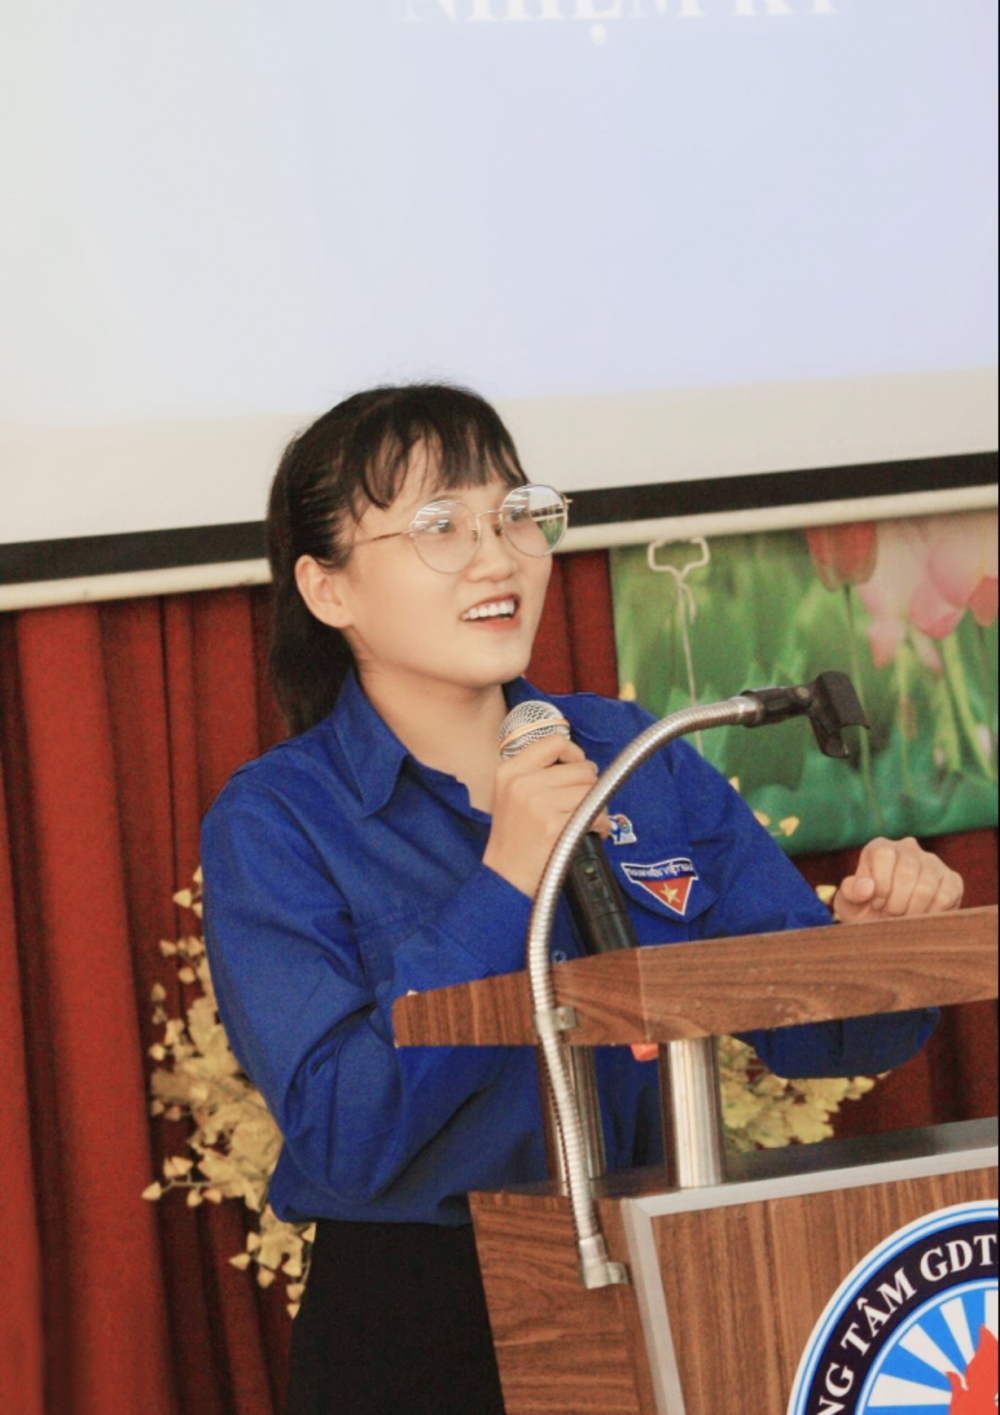 Trưởng thành từ công tác đoàn, Nguyễn Hoài Hân chọn học ngành công tác xã hội để mong giúp đỡ được nhiều người